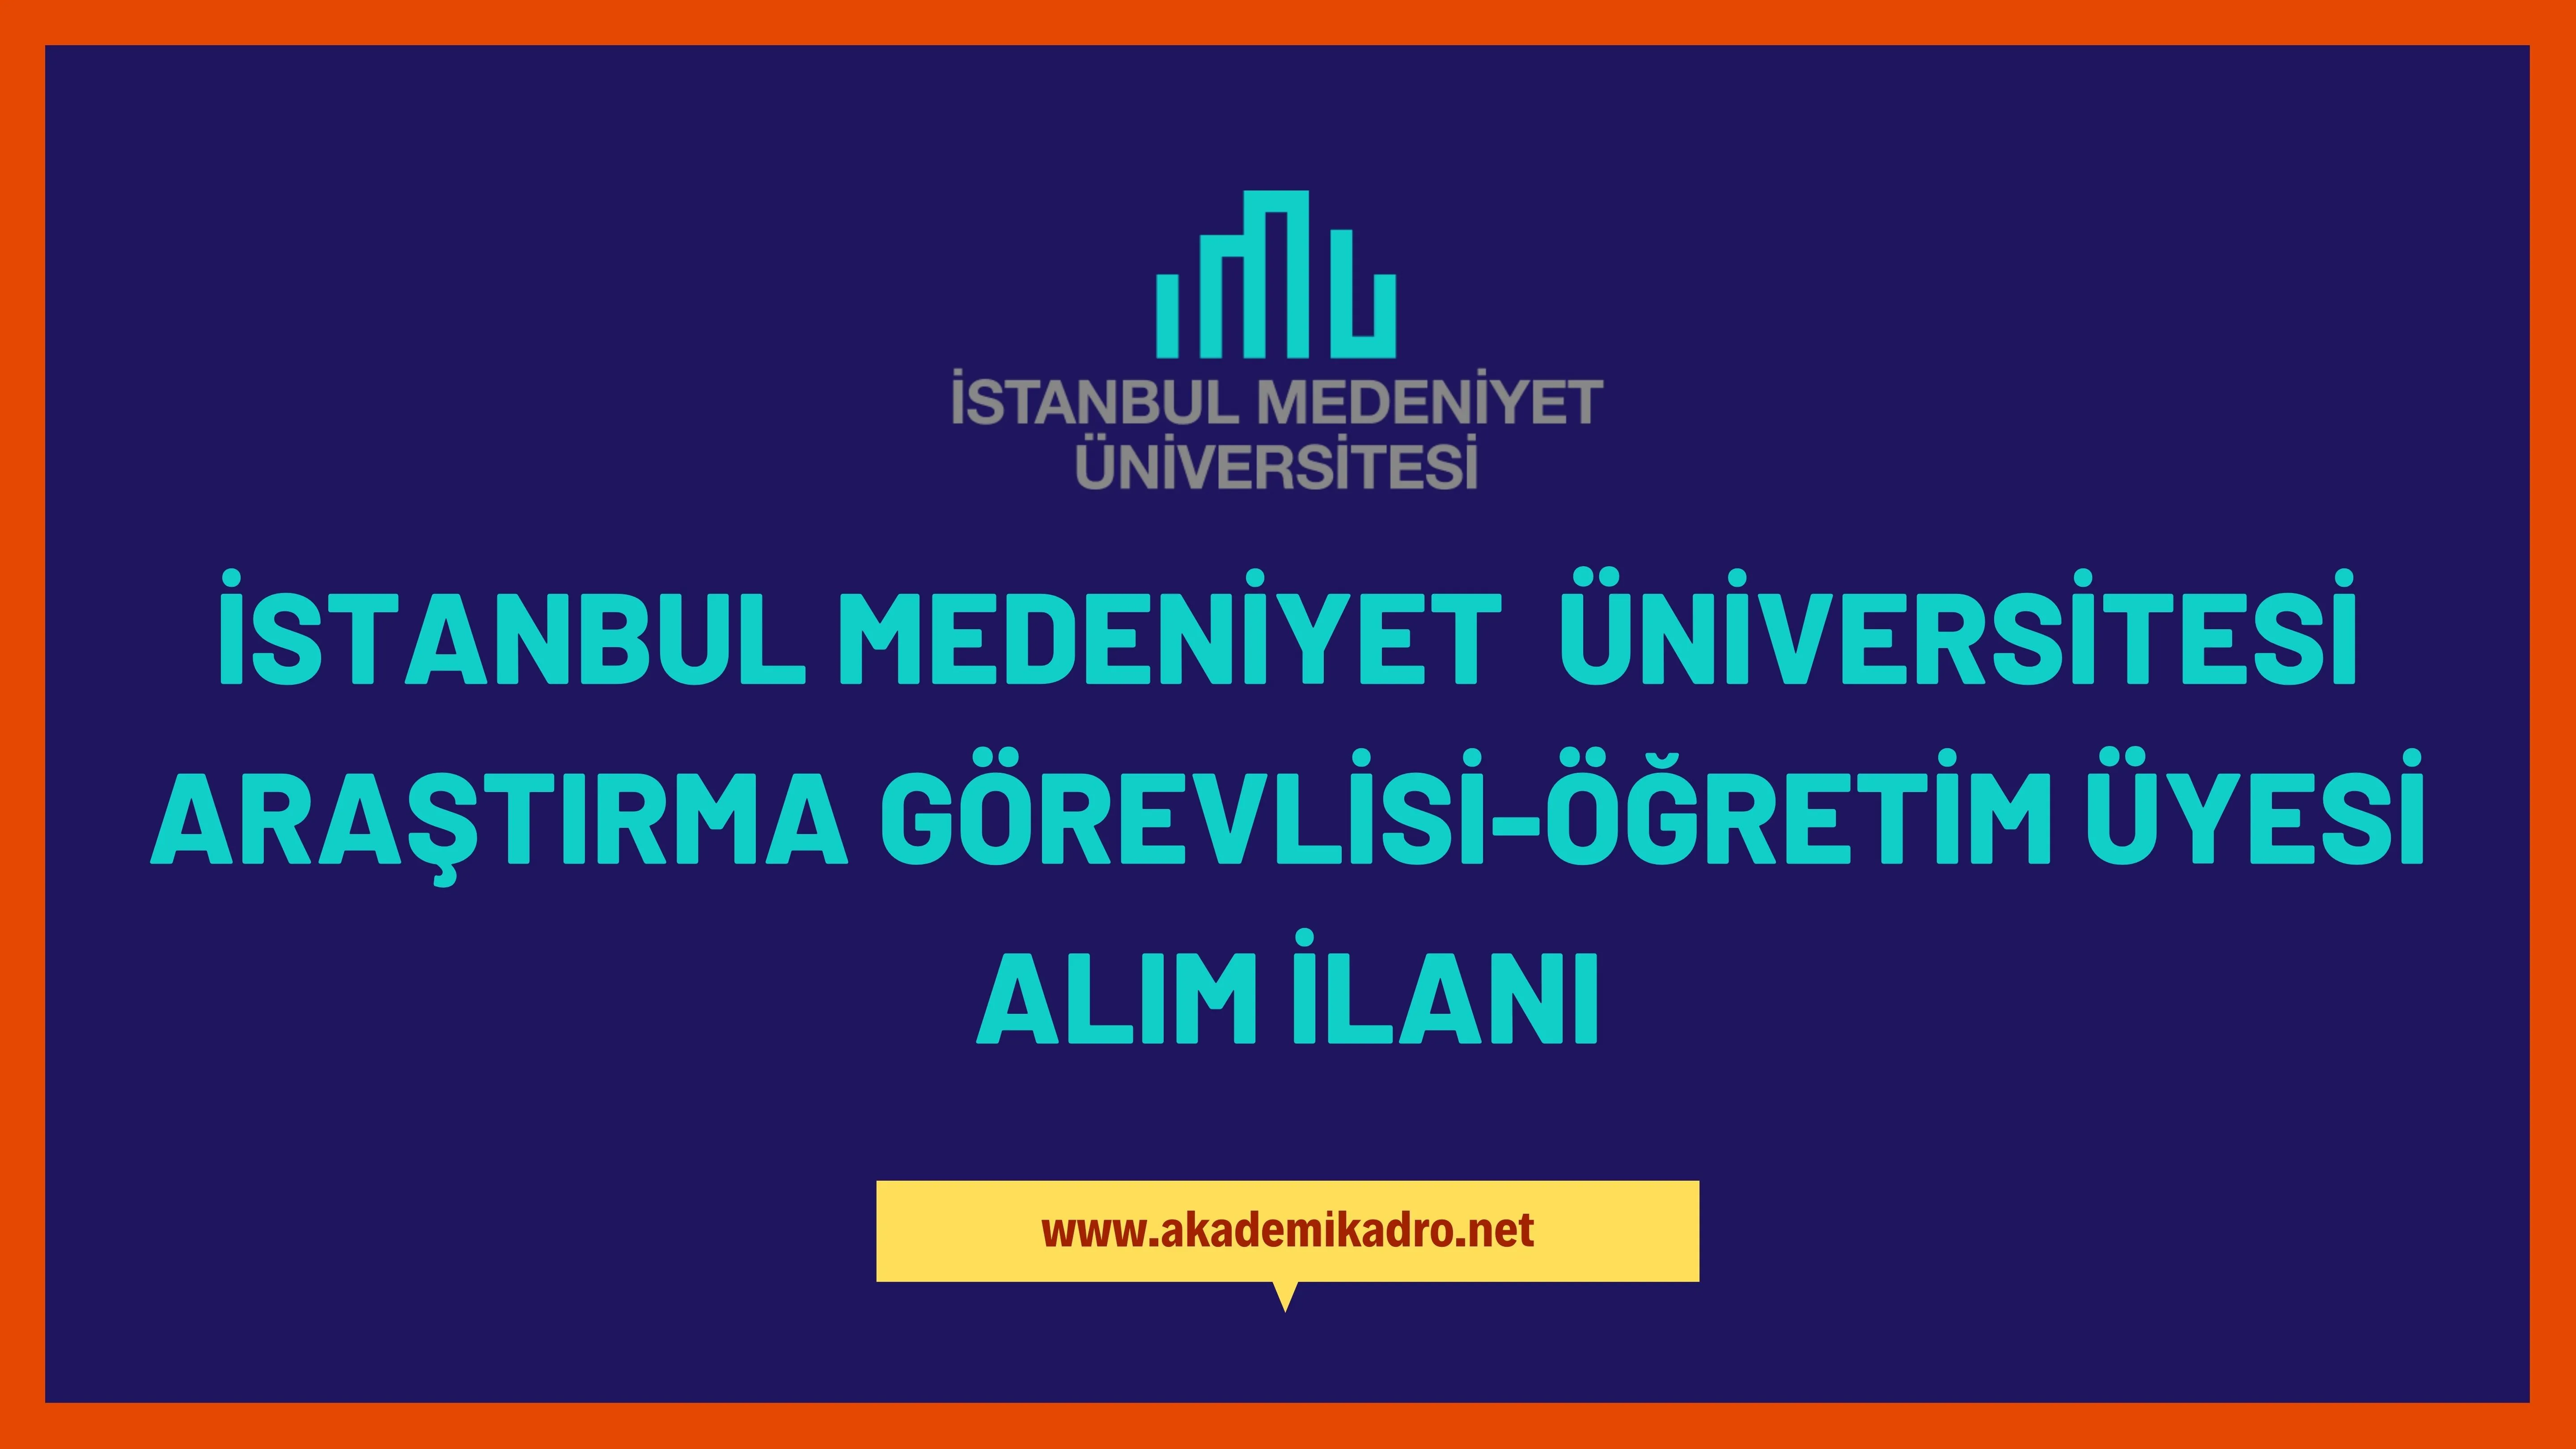 İstanbul Medeniyet Üniversitesi 5 Araştırma görevlisi ve 19 Öğretim üyesi alacak. Son başvuru tarihi 10 Ocak 2023.